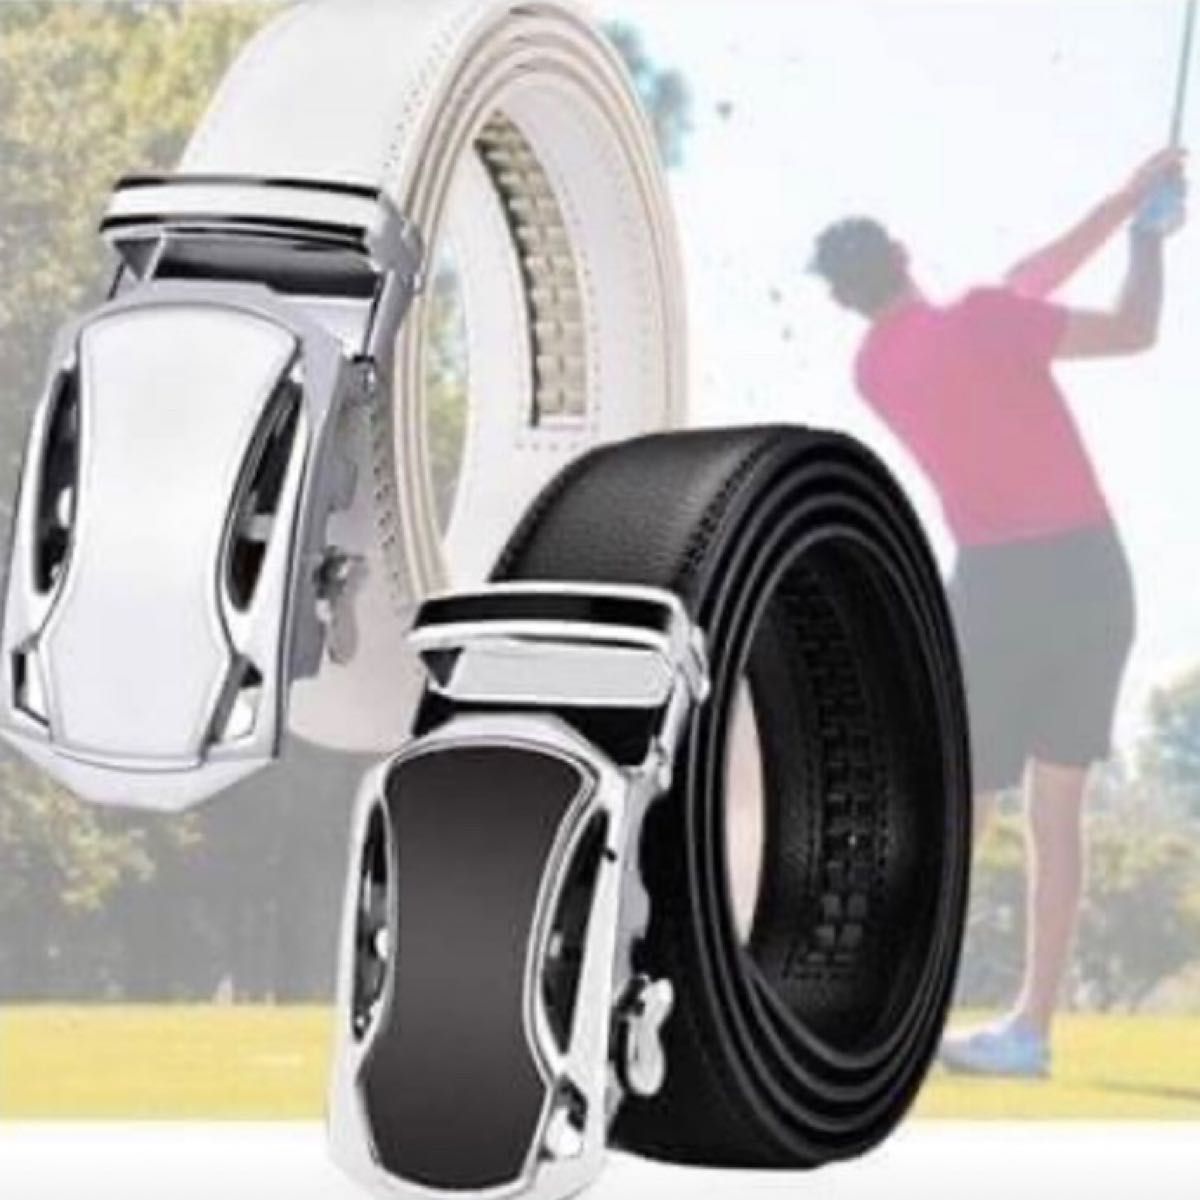 【白】 革 ゴルフベルト 穴なし サイズ調整可 オートロック式 メンズ 人気商品